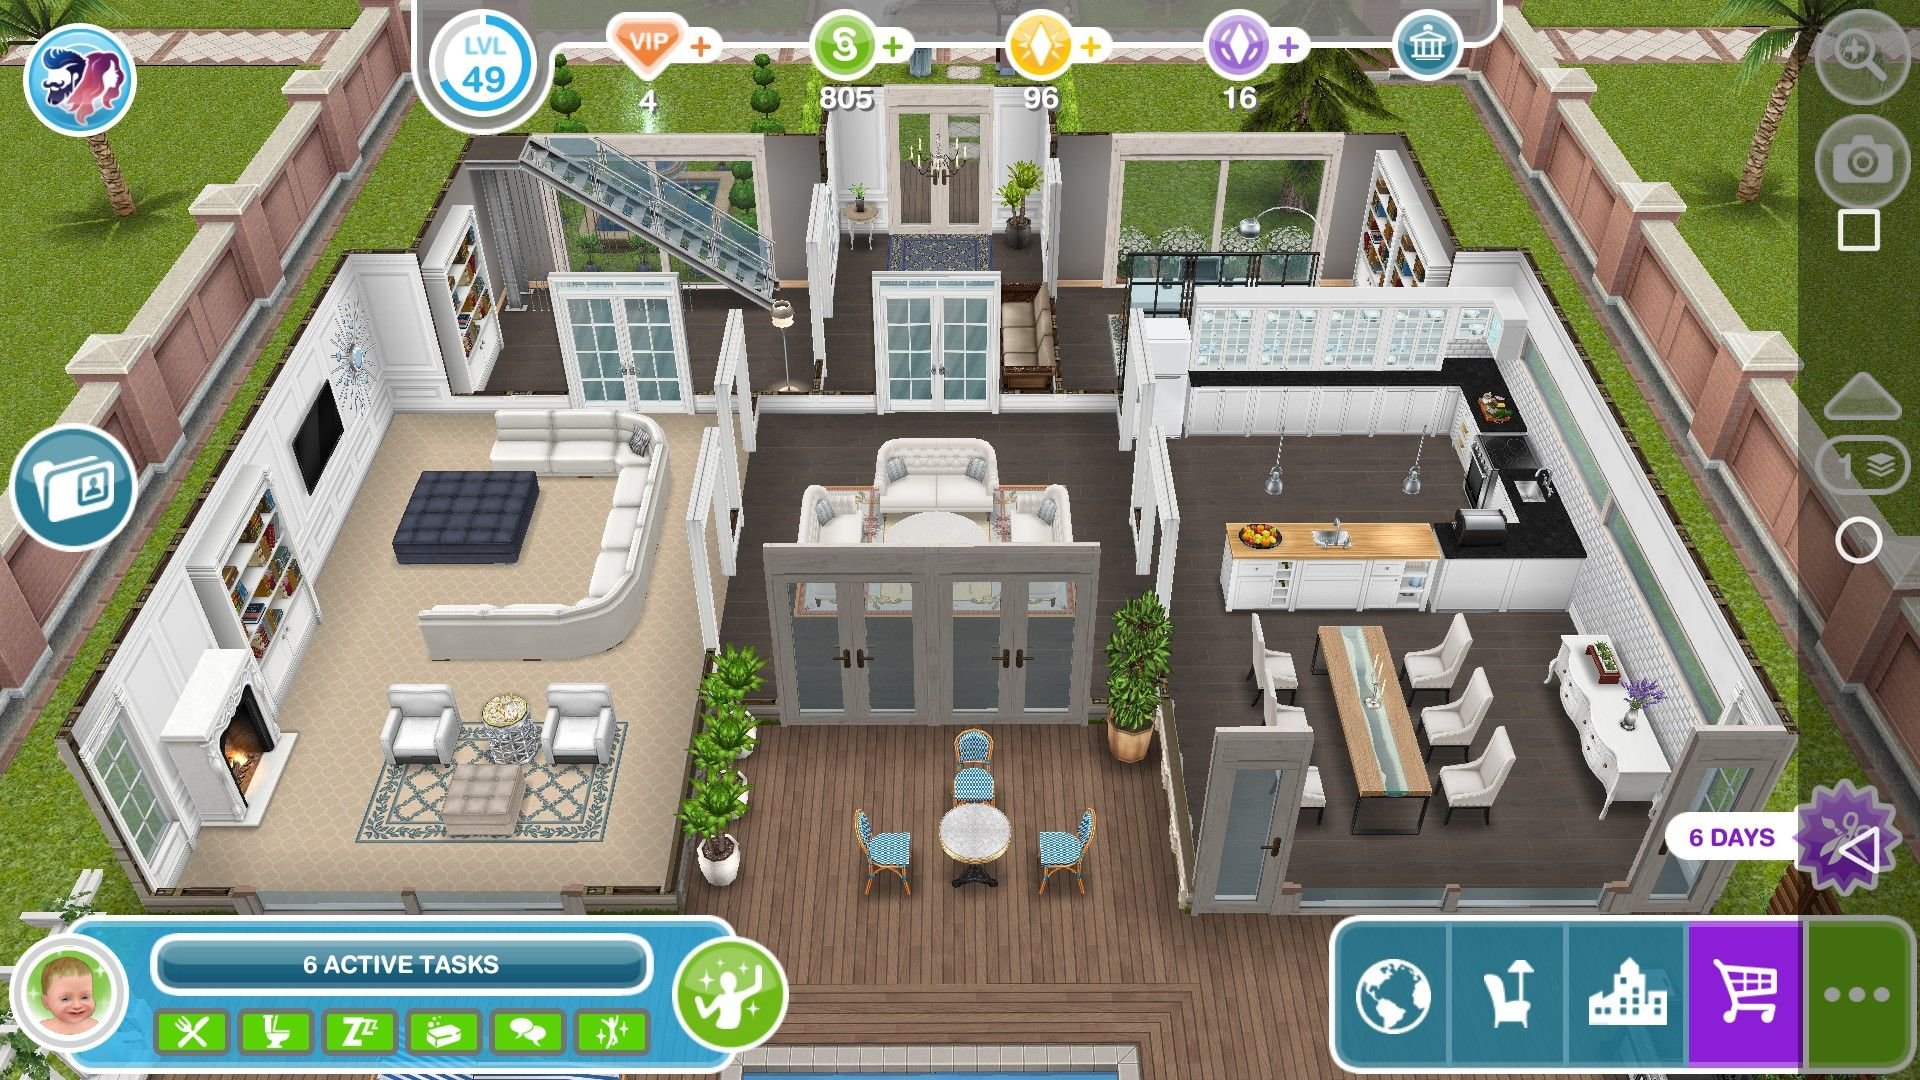 The Sims FreePlay для iOS и Android. Впечатления и отзывы игроков